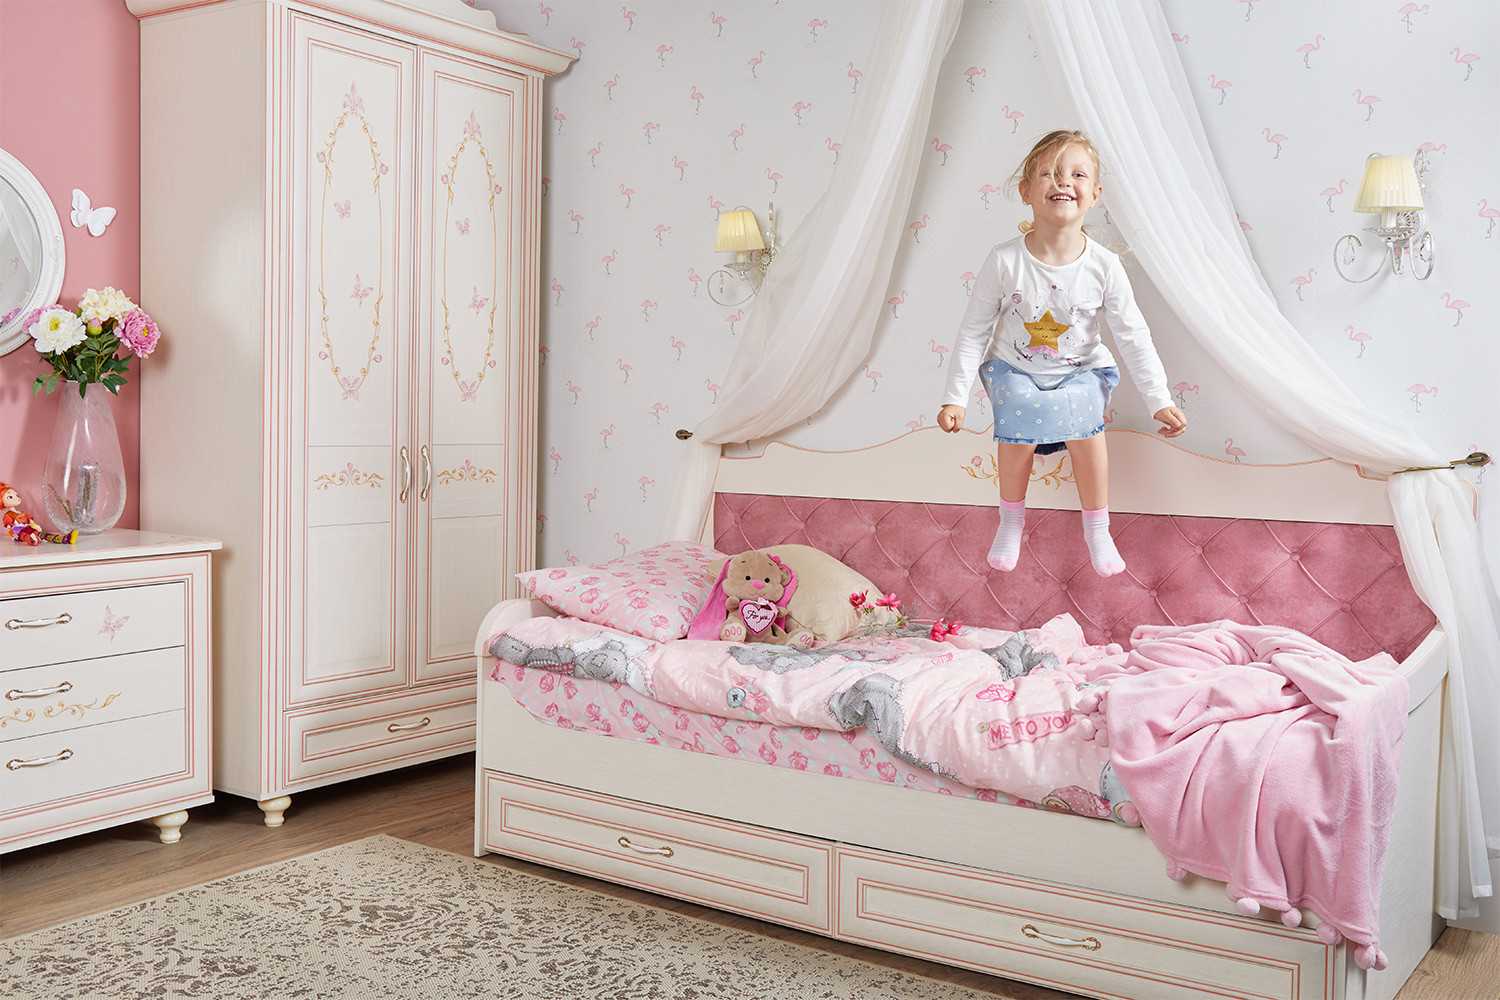 Кровать для подростка: популярные варианты для мальчиков и девочек, фото подростковых кроватей, требования, как правильно выбрать и разместить